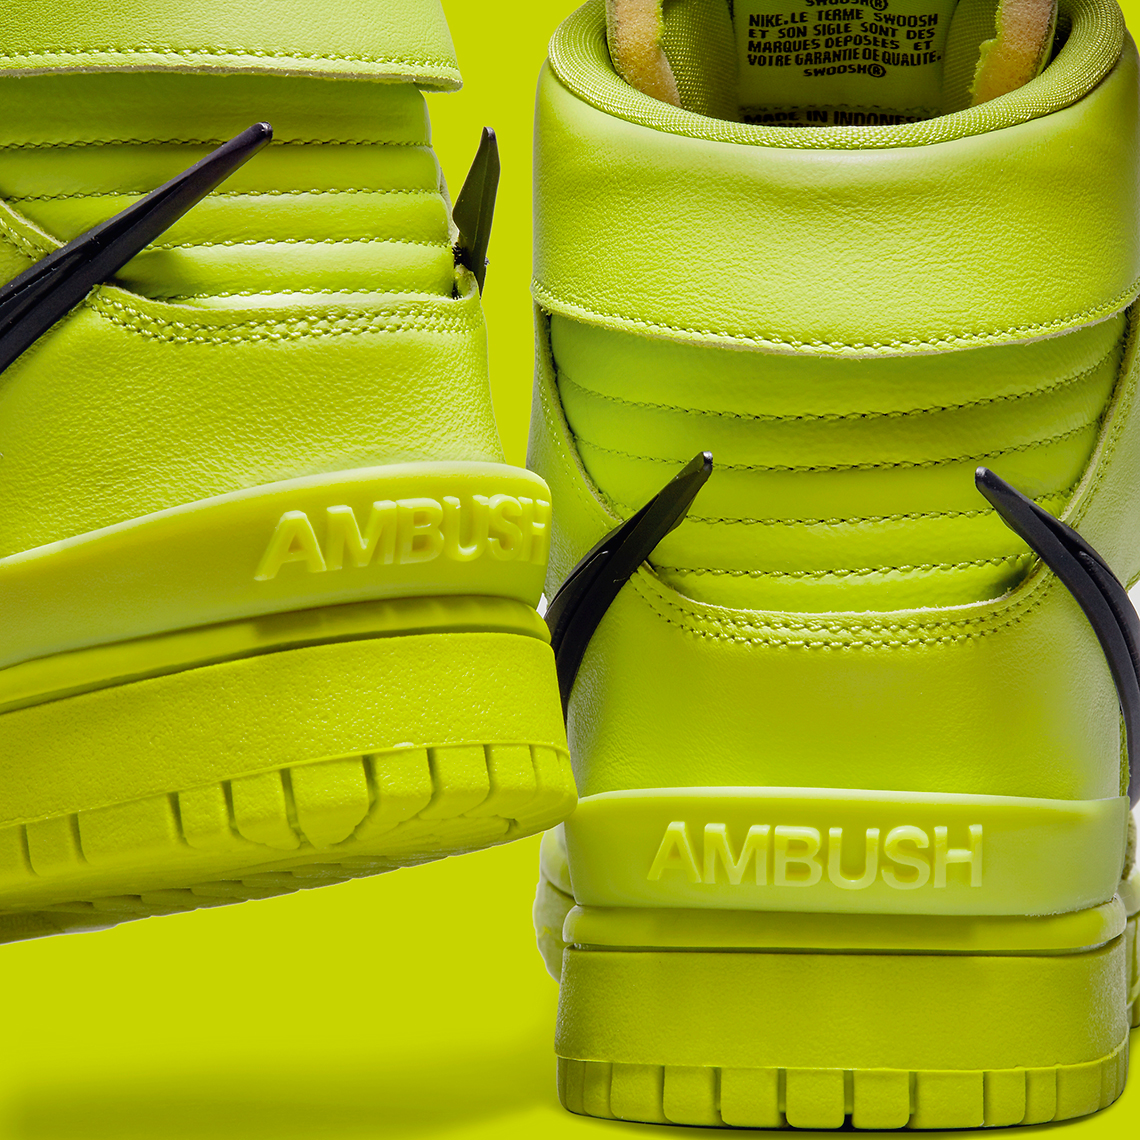 Ambush Nike Dunk High Atomic Green Cu7544 300 Release Date 7